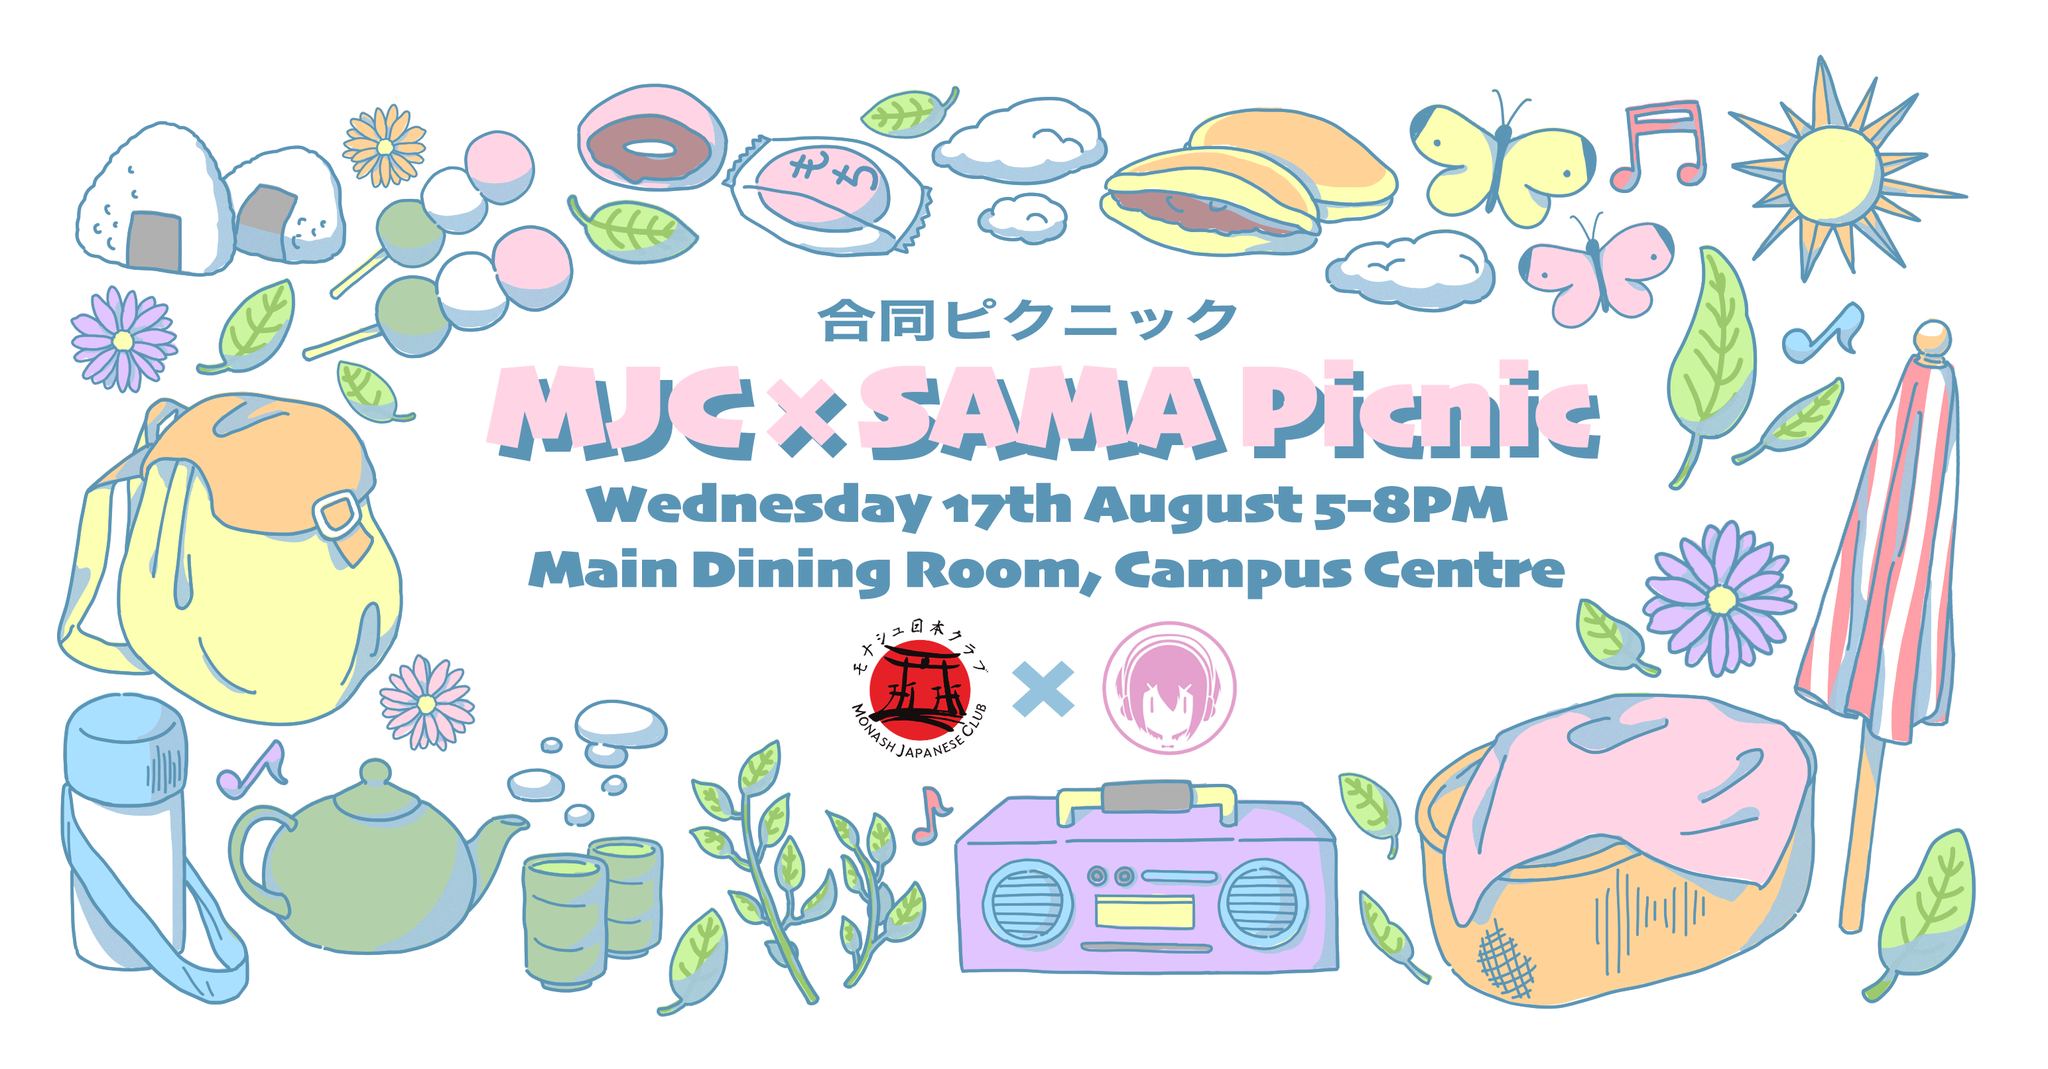 MJC x SAMA Picnic - Wagashi & Games banner